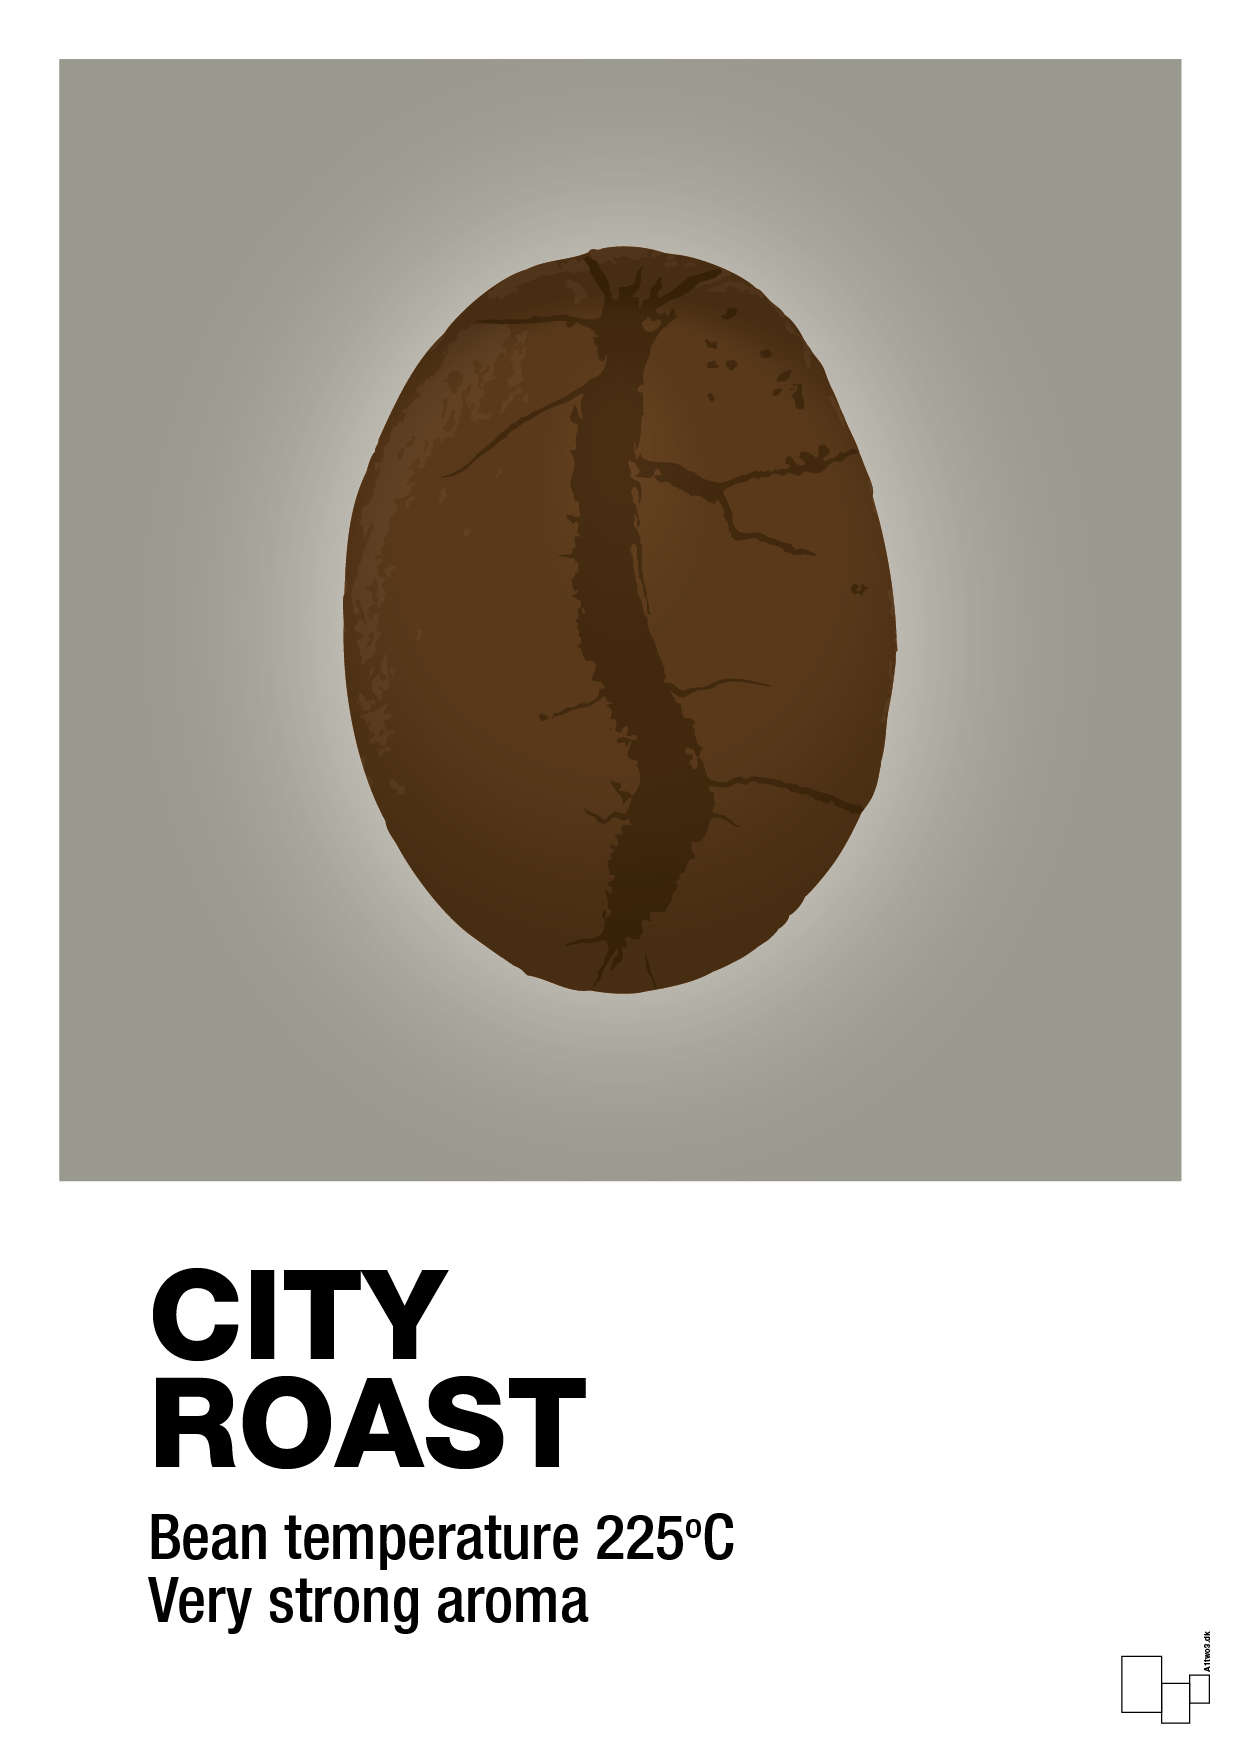 city roast - Plakat med Mad & Drikke i Battleship Gray